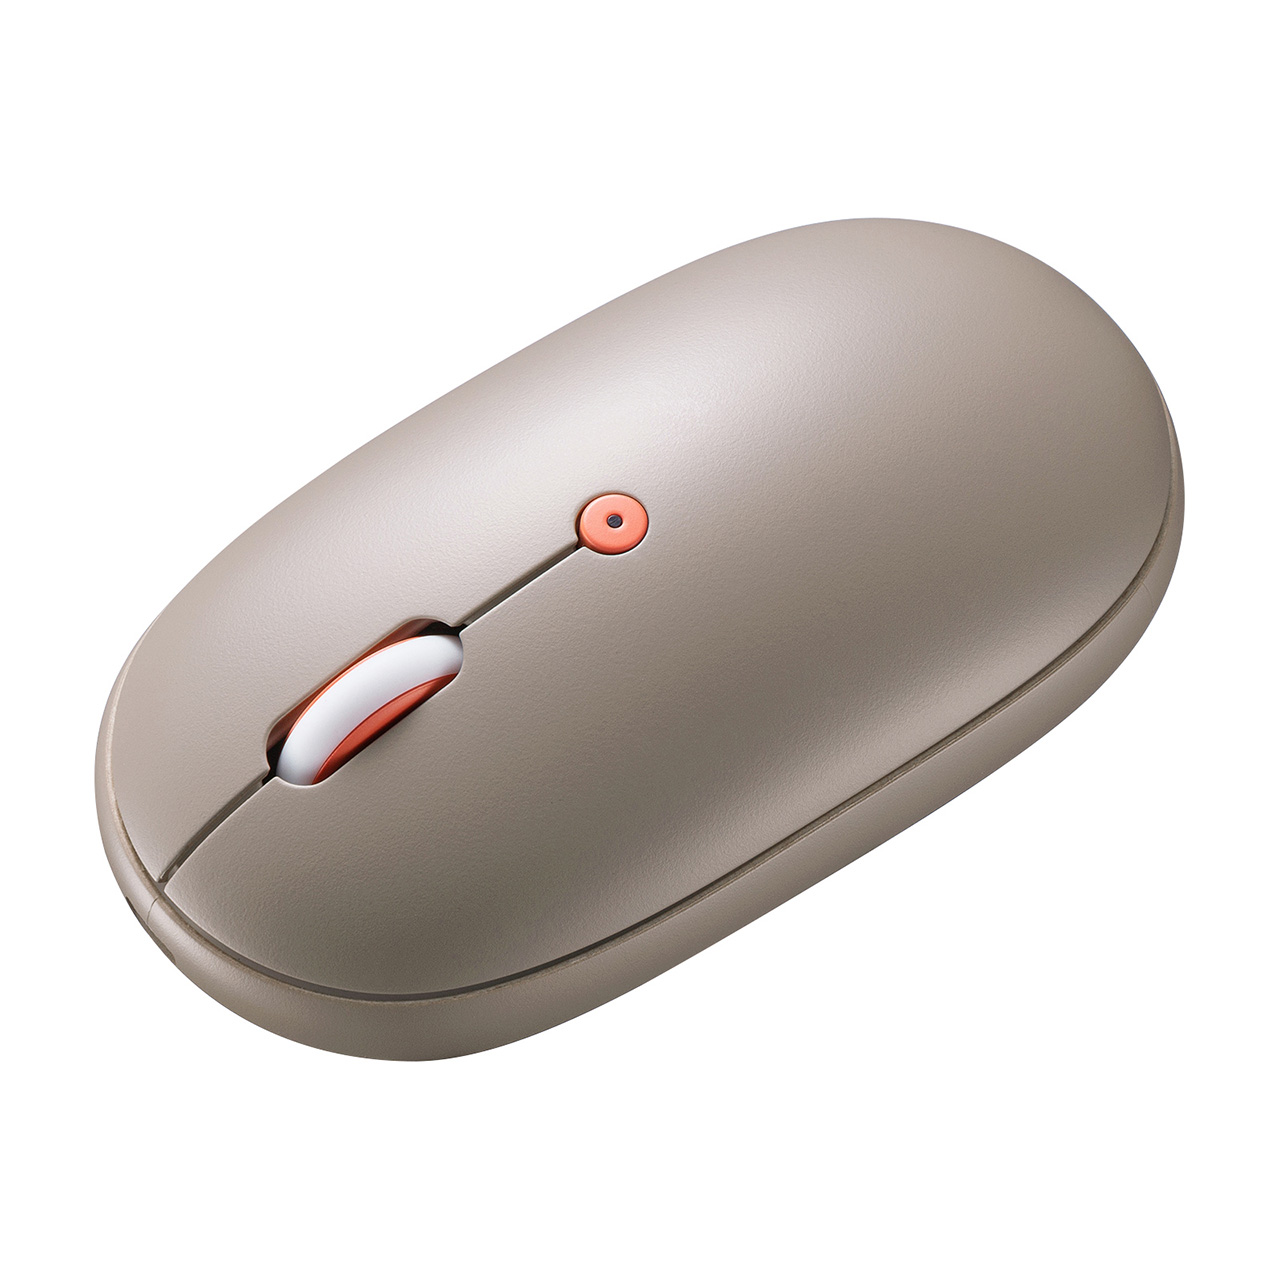 充電式マウス Bluetoothマウス フラットマウス 静音マウス マルチペアリング 3ボタン ブルーLED ベージュ  MA-ASBTBL200の販売商品 通販ならサンワダイレクト